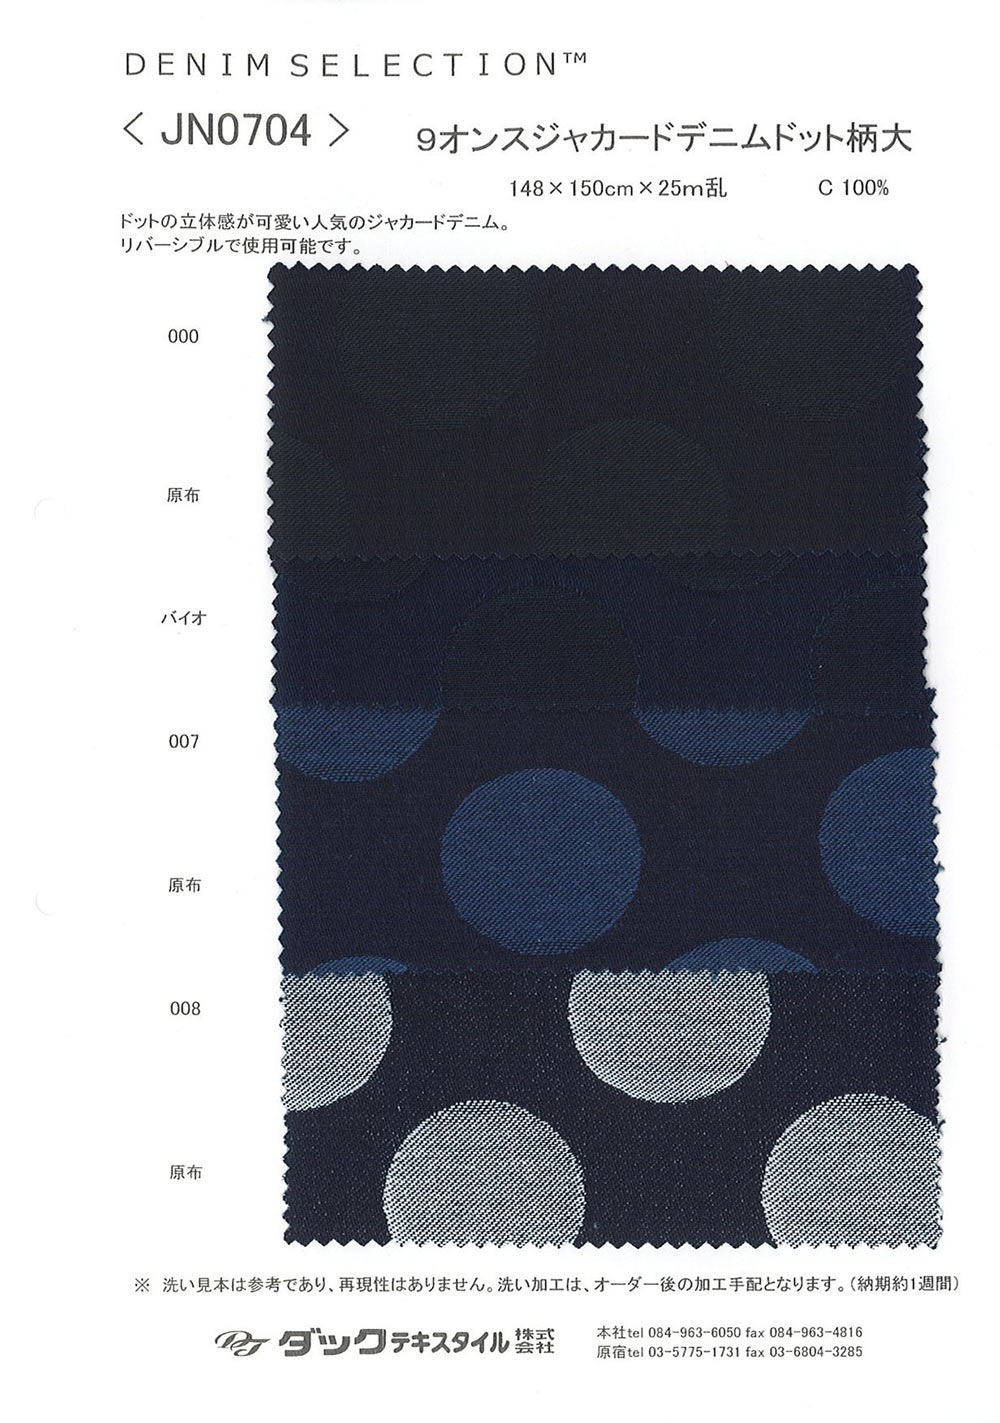 JN0704 Diseño De Lunares De Tela Vaquera Jacquard De 9 Oz, Grande[Fabrica Textil] DUCK TEXTILE